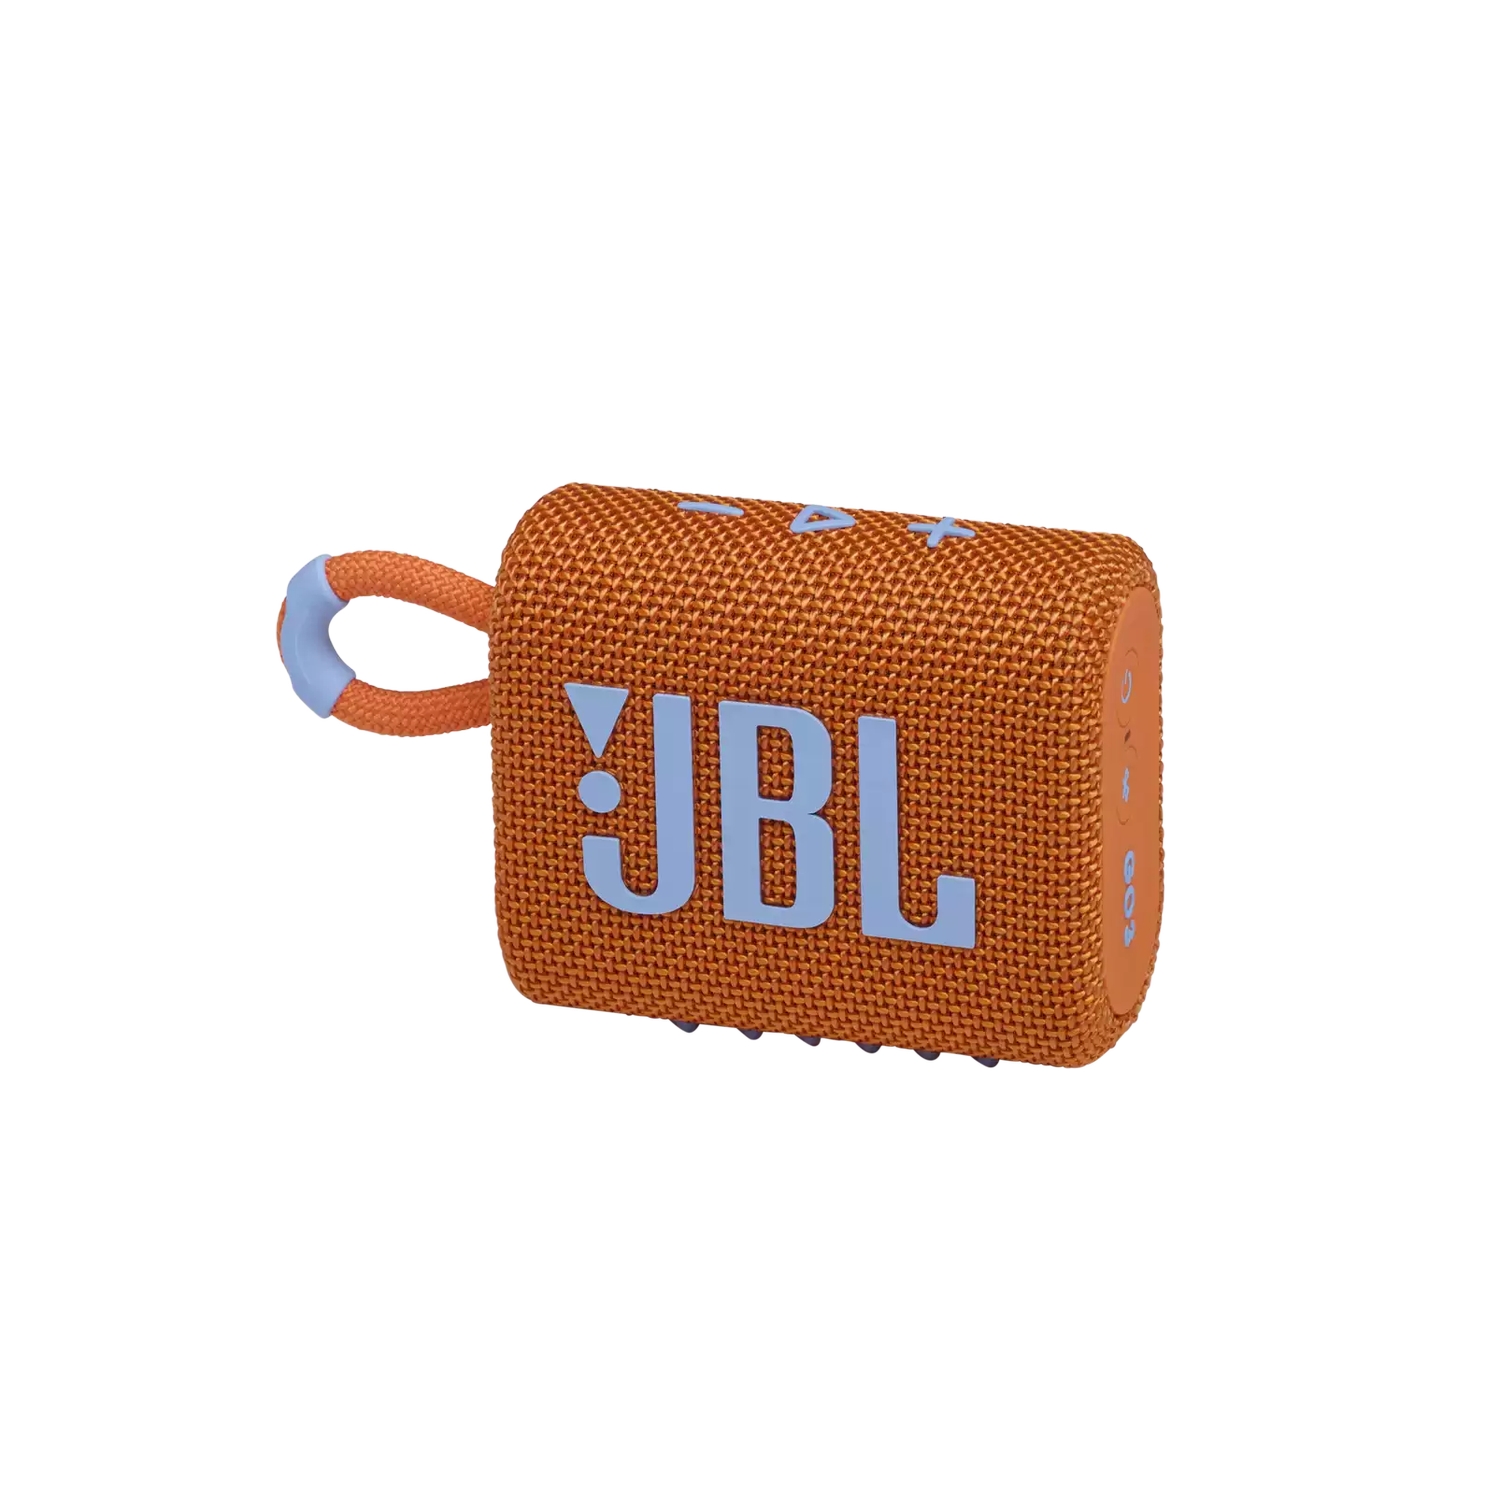 Портативная акустика JBL GO 3 оранжевая цена и фото